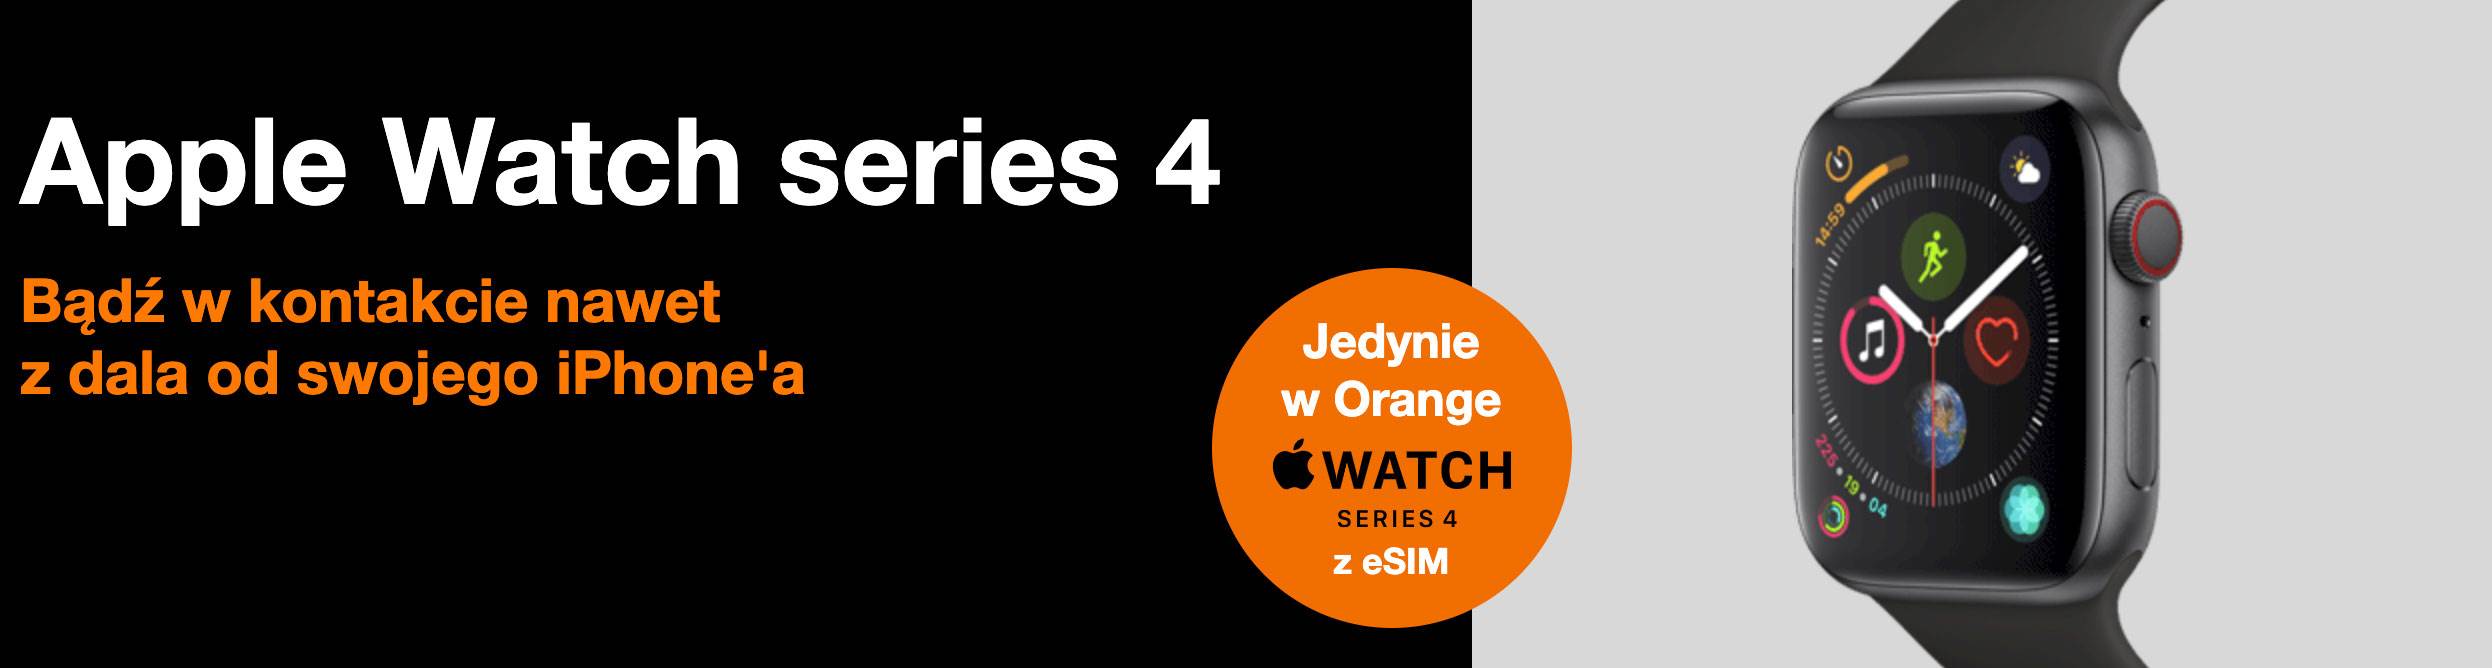 Apple Watch Series 3 / Series 4 z LTE już dostępny w ofercie sieci Orange. Oto oficjalne ceny polecane, ciekawostki Orange, ile kosztuje, ceny apple watch z lte w orange, apple watch z lte, apple watch series 4 z lte w orange, apple watch series 3 z lte w orange, Abonament  Jest dokładnie tak jak informowaliśmy kilka dni temu. Właśnie do oferty sieci Orange trafiły Apple Watch?e Series 3 i Series 4 z obsługą sieci komórkowej, czyli z LTE. AW 2